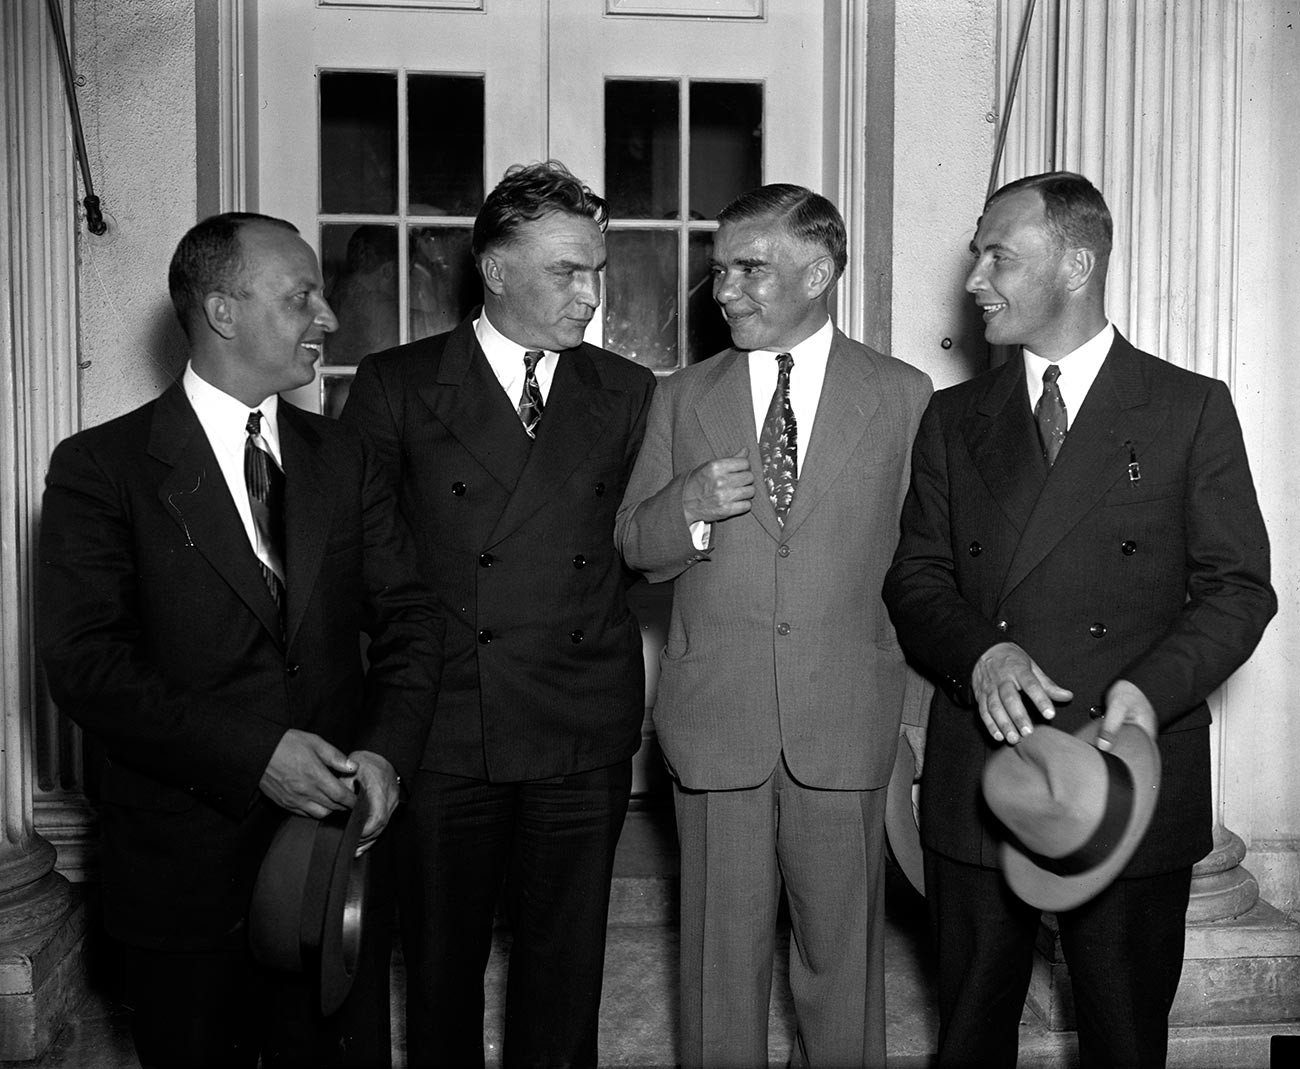 Bajdukov, Čkalov in Beljakov v družbi sovjetskega veleposlanika v ZDA Trojanovskega po sprejemu pri ameriškem predsedniku Rooseveltu v Beli hiši 28. junija 1937